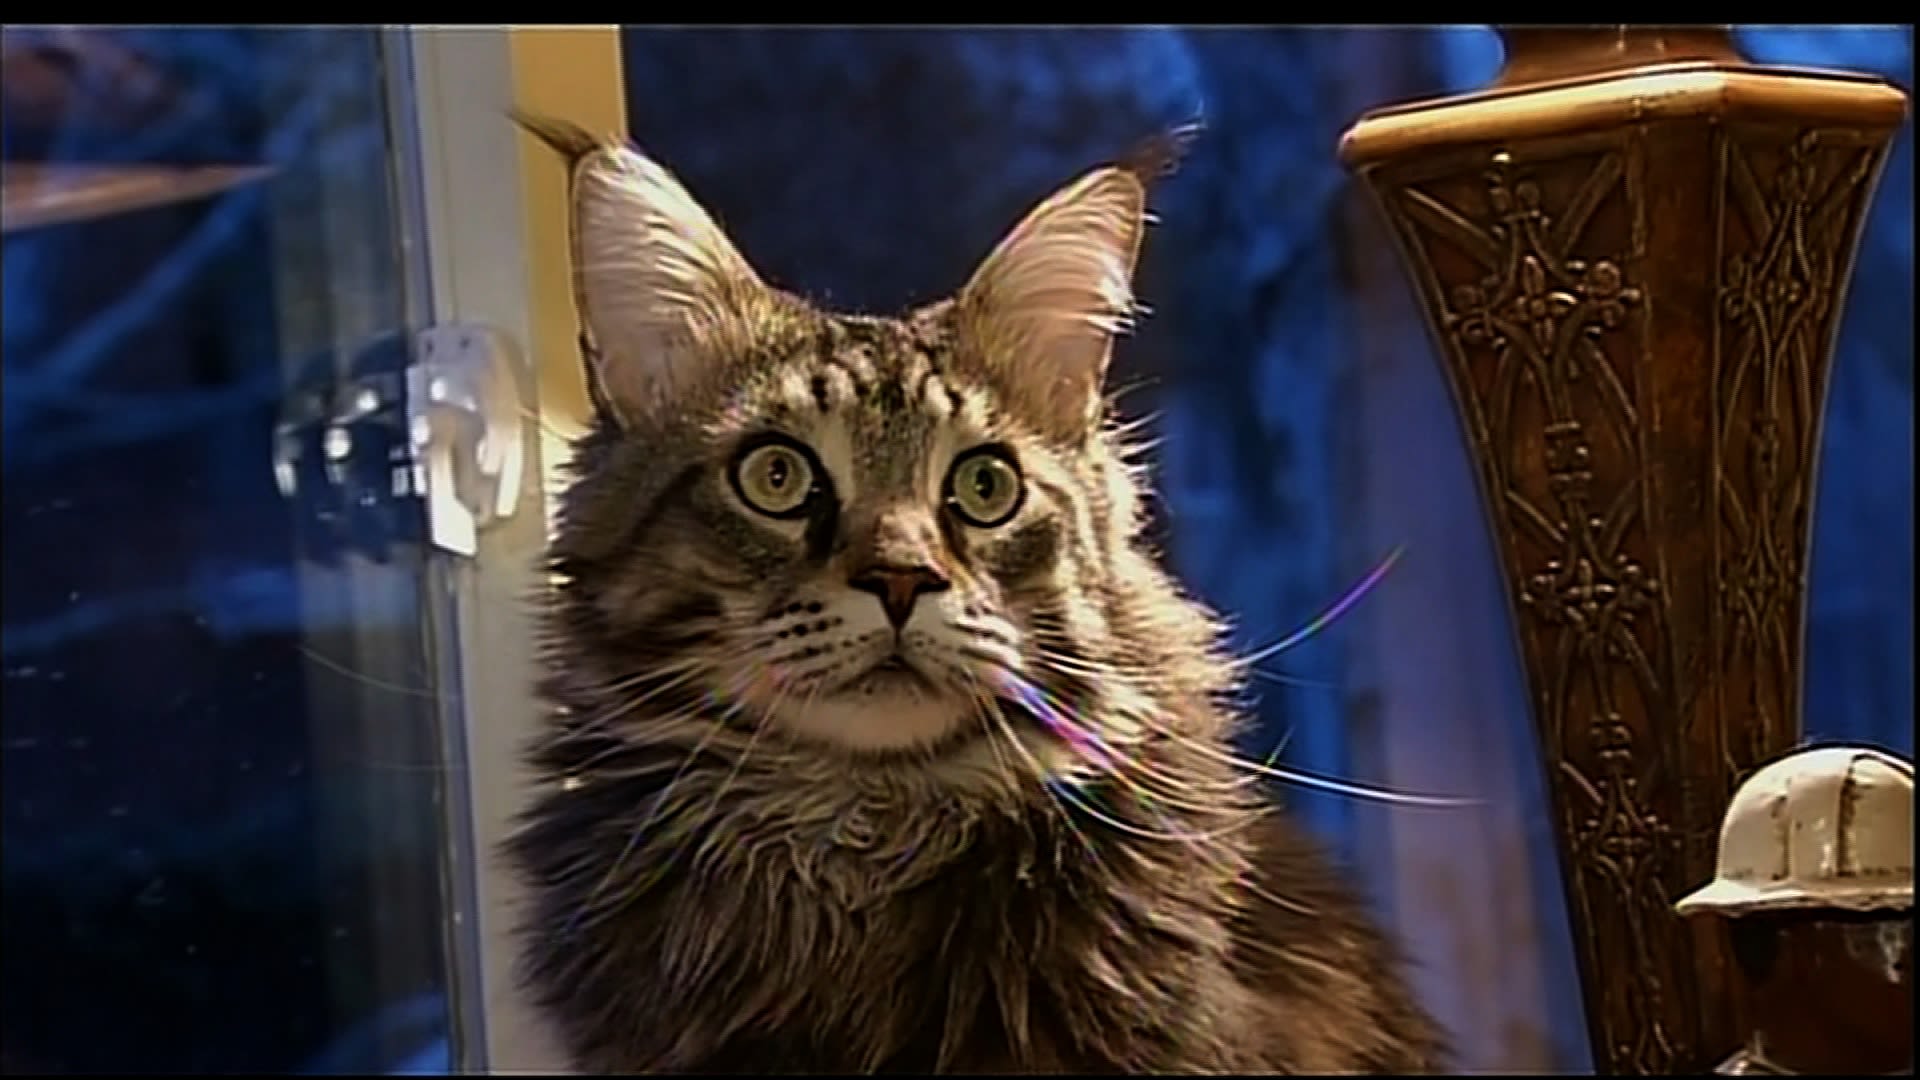 Meet Spock, the housecat mistaken for a bobcat | CNN